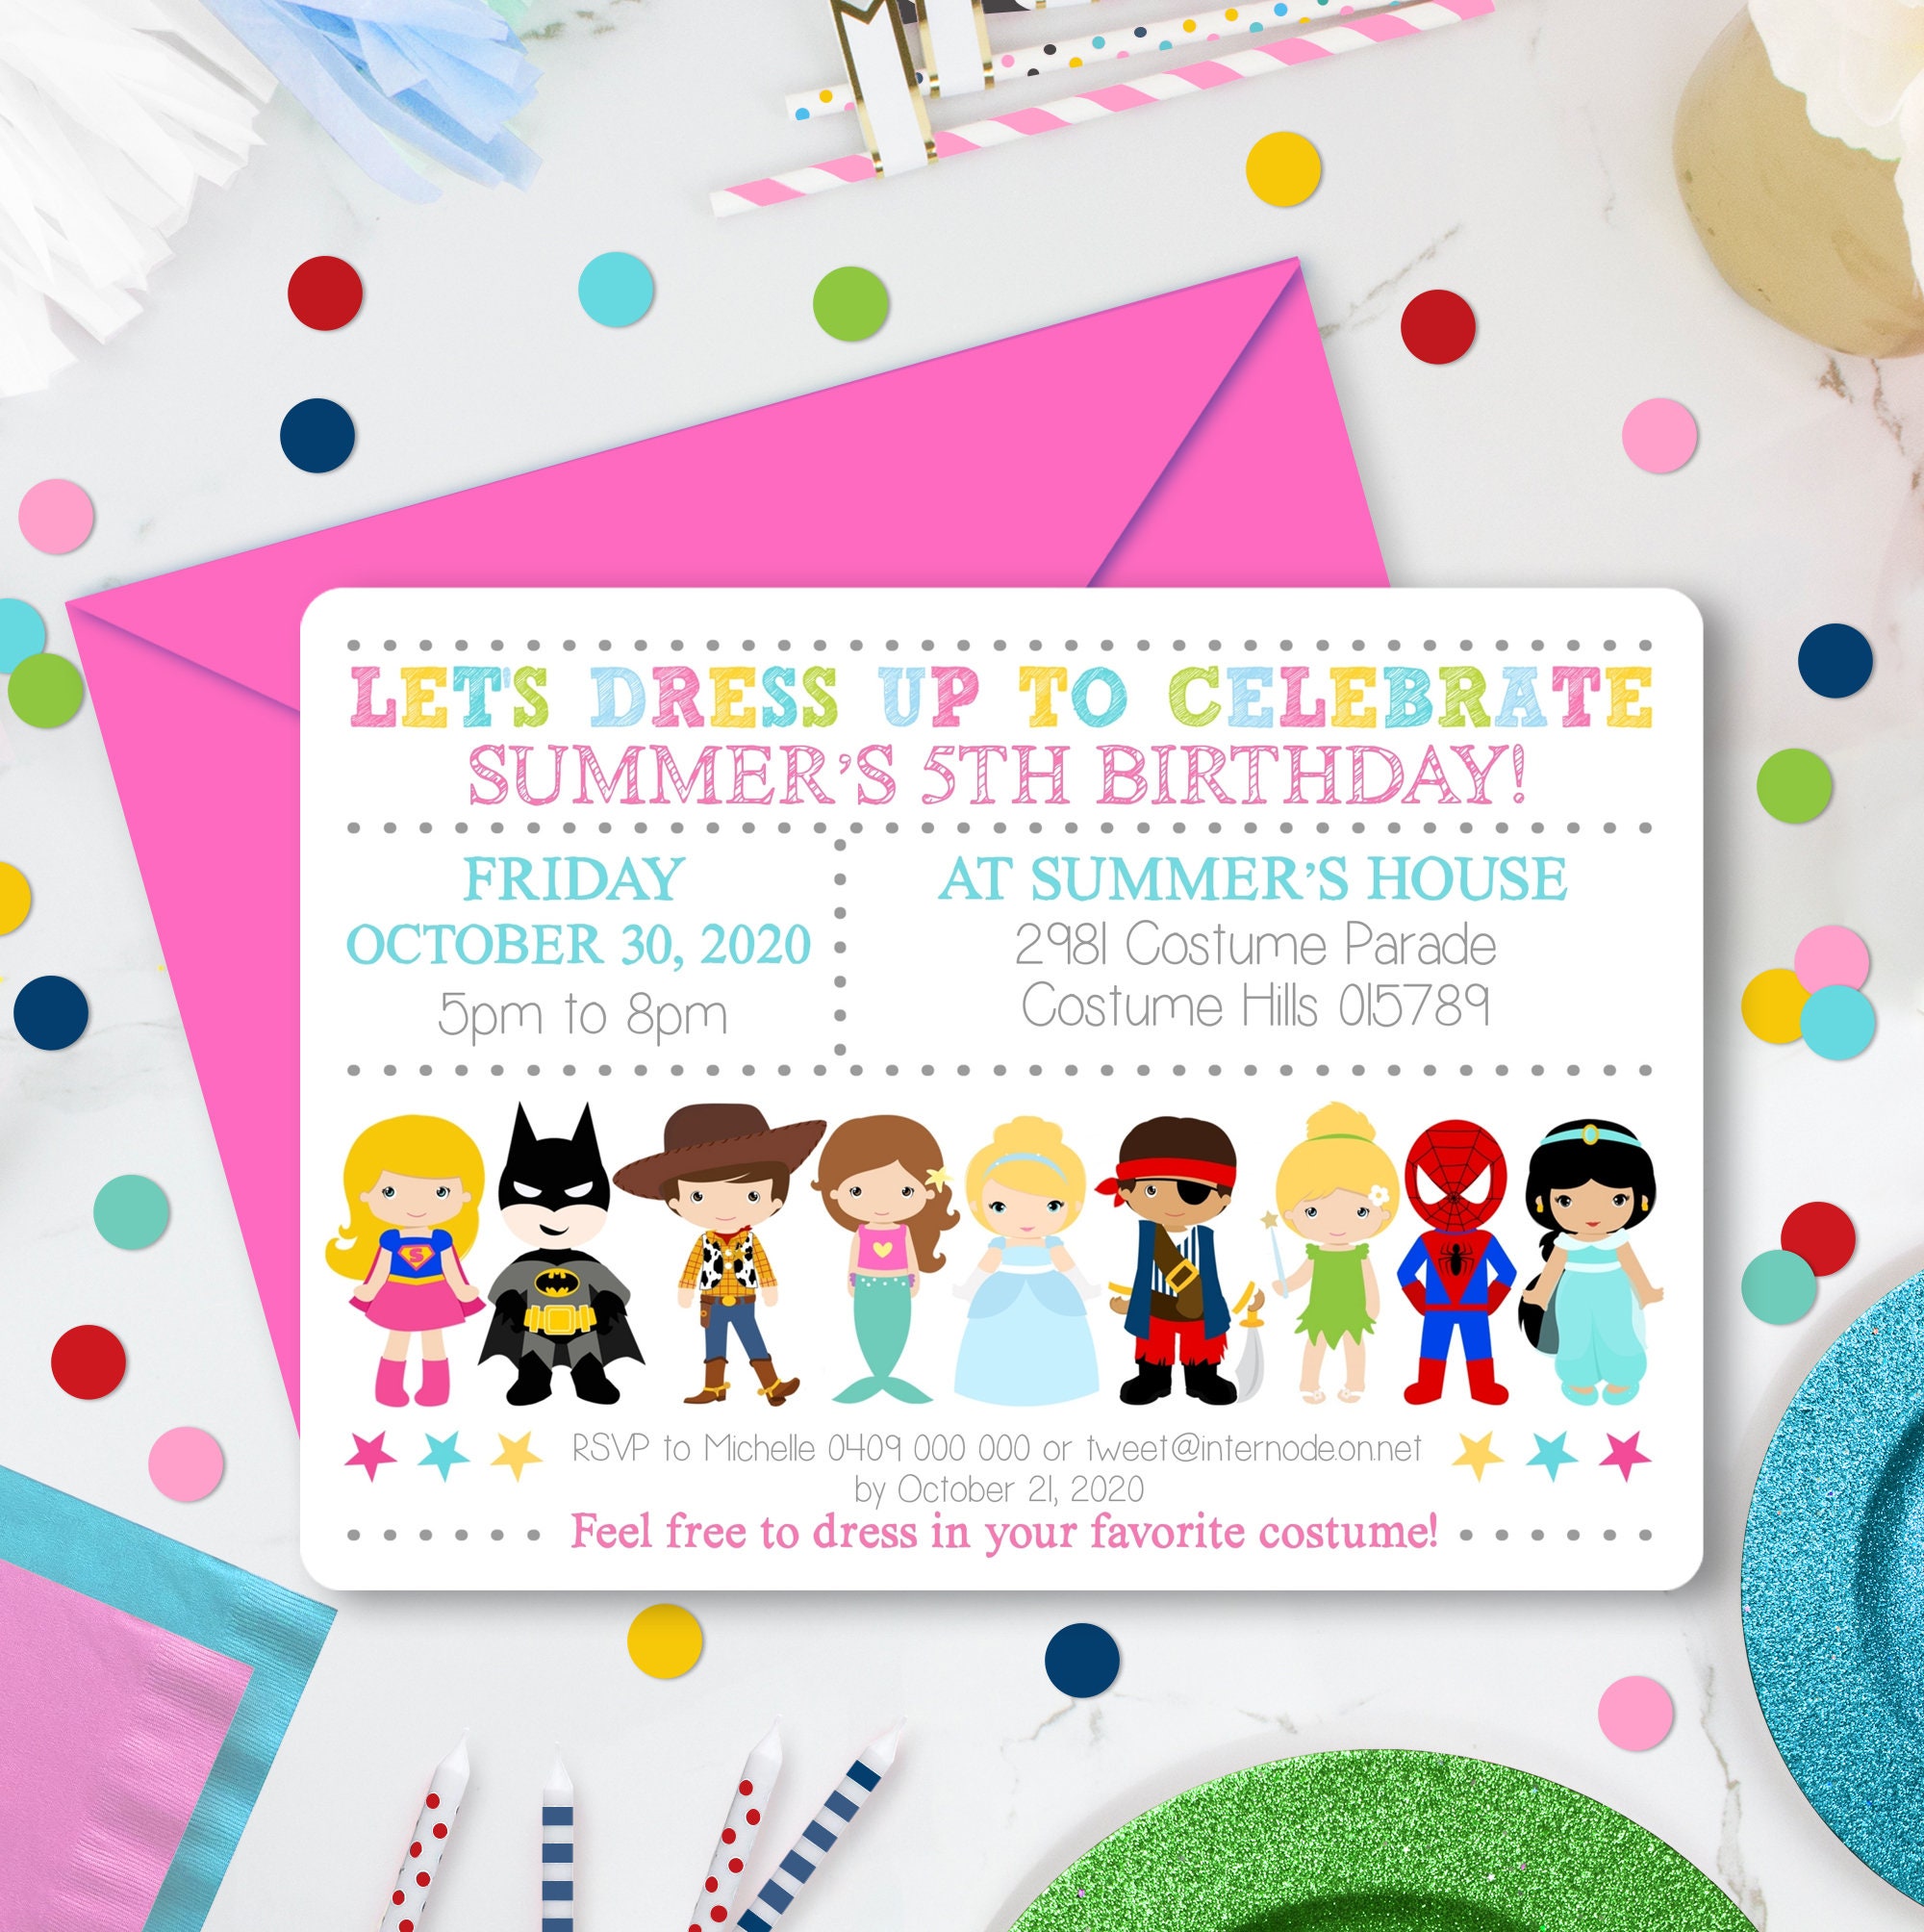 Costume party invitation